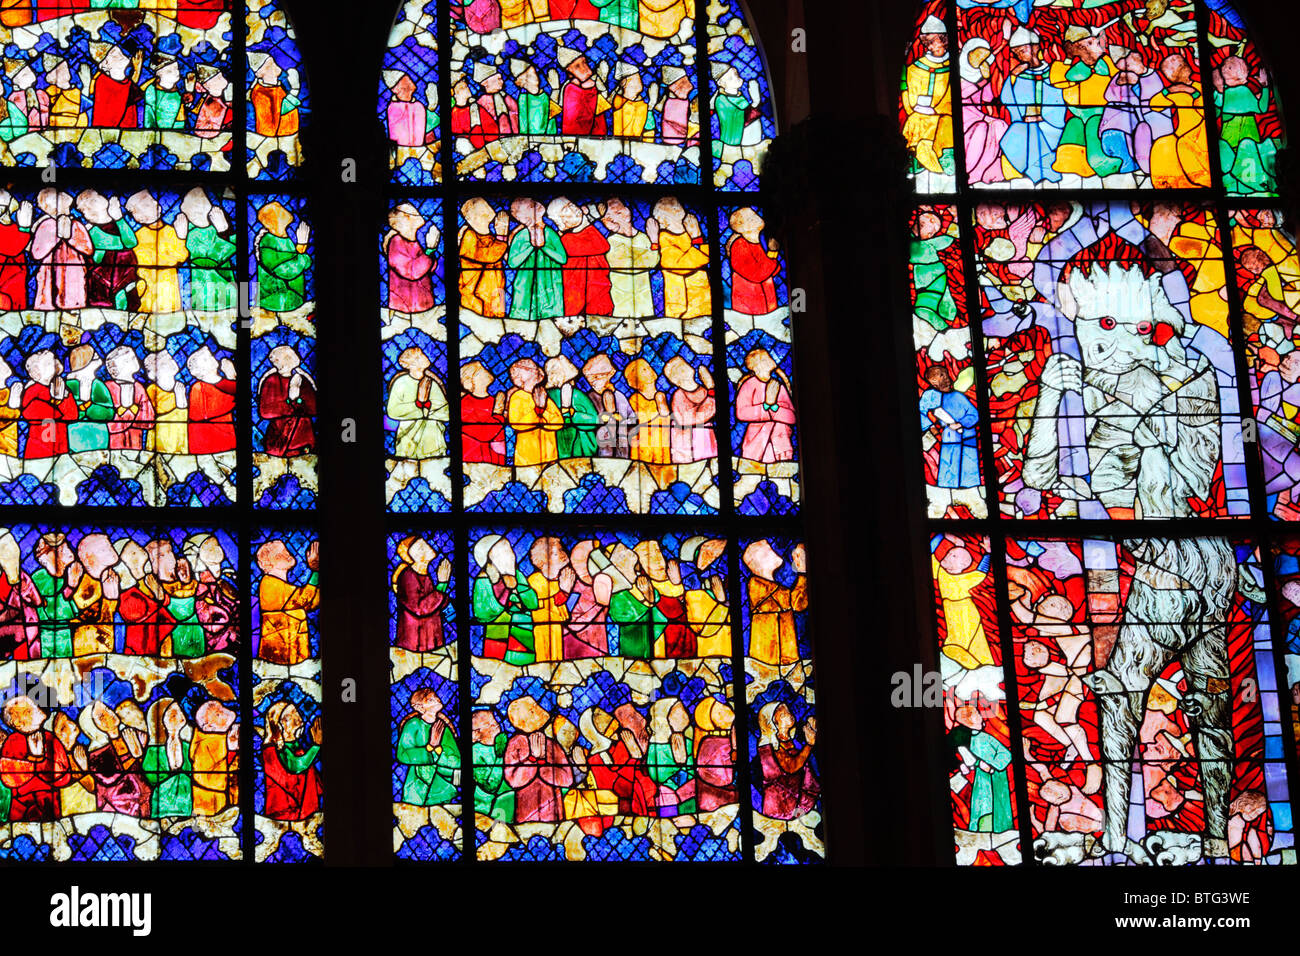 Vitrail (14e siècle), la cathédrale de Strasbourg, Strasbourg, Alsace, France Banque D'Images